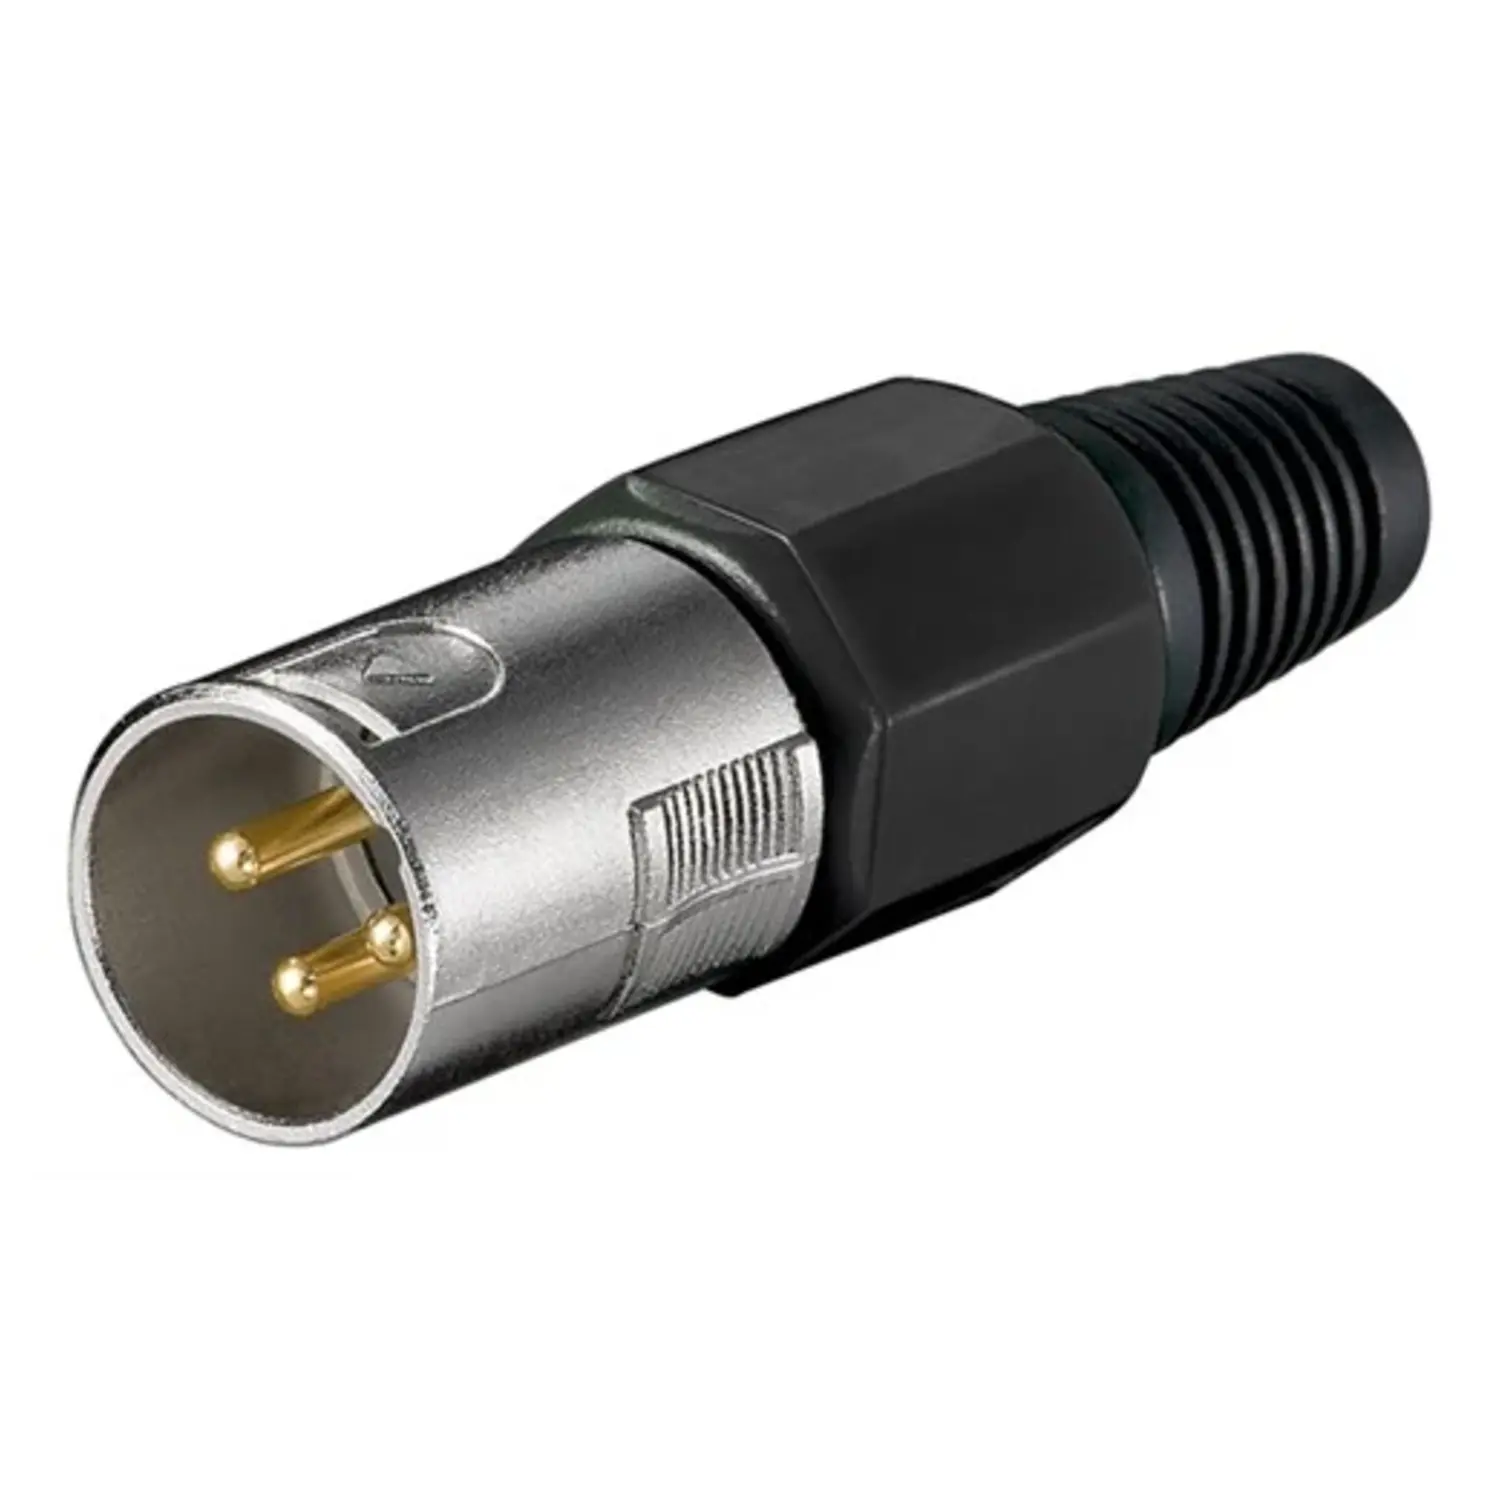 immagine del prodotto spina canon microfono 3 poli contatti professionale connettore xlr maschio